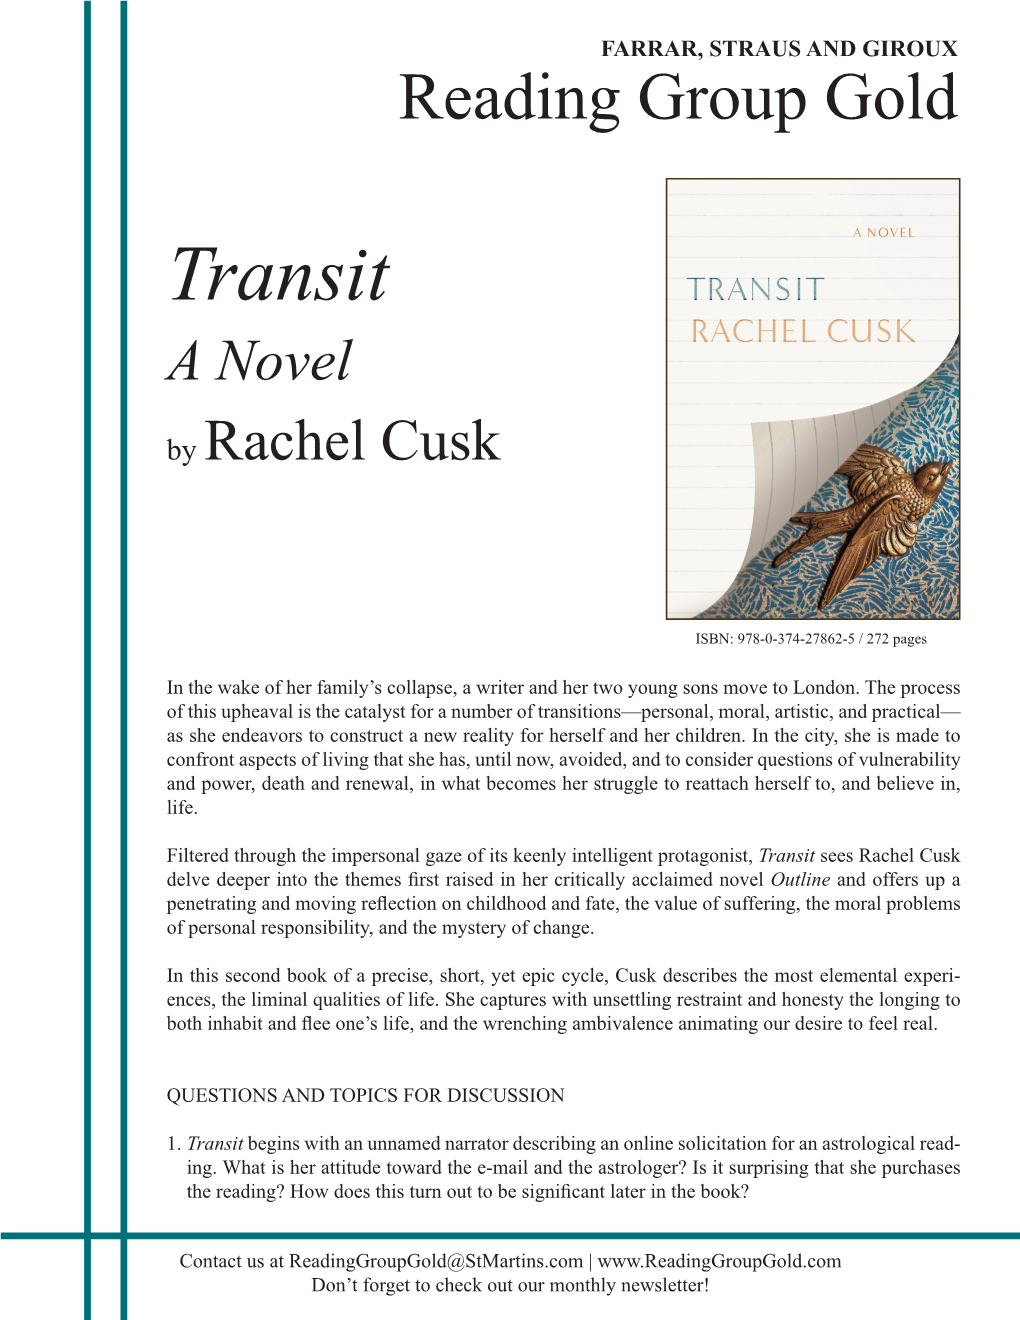 Transit a Novel by Rachel Cusk